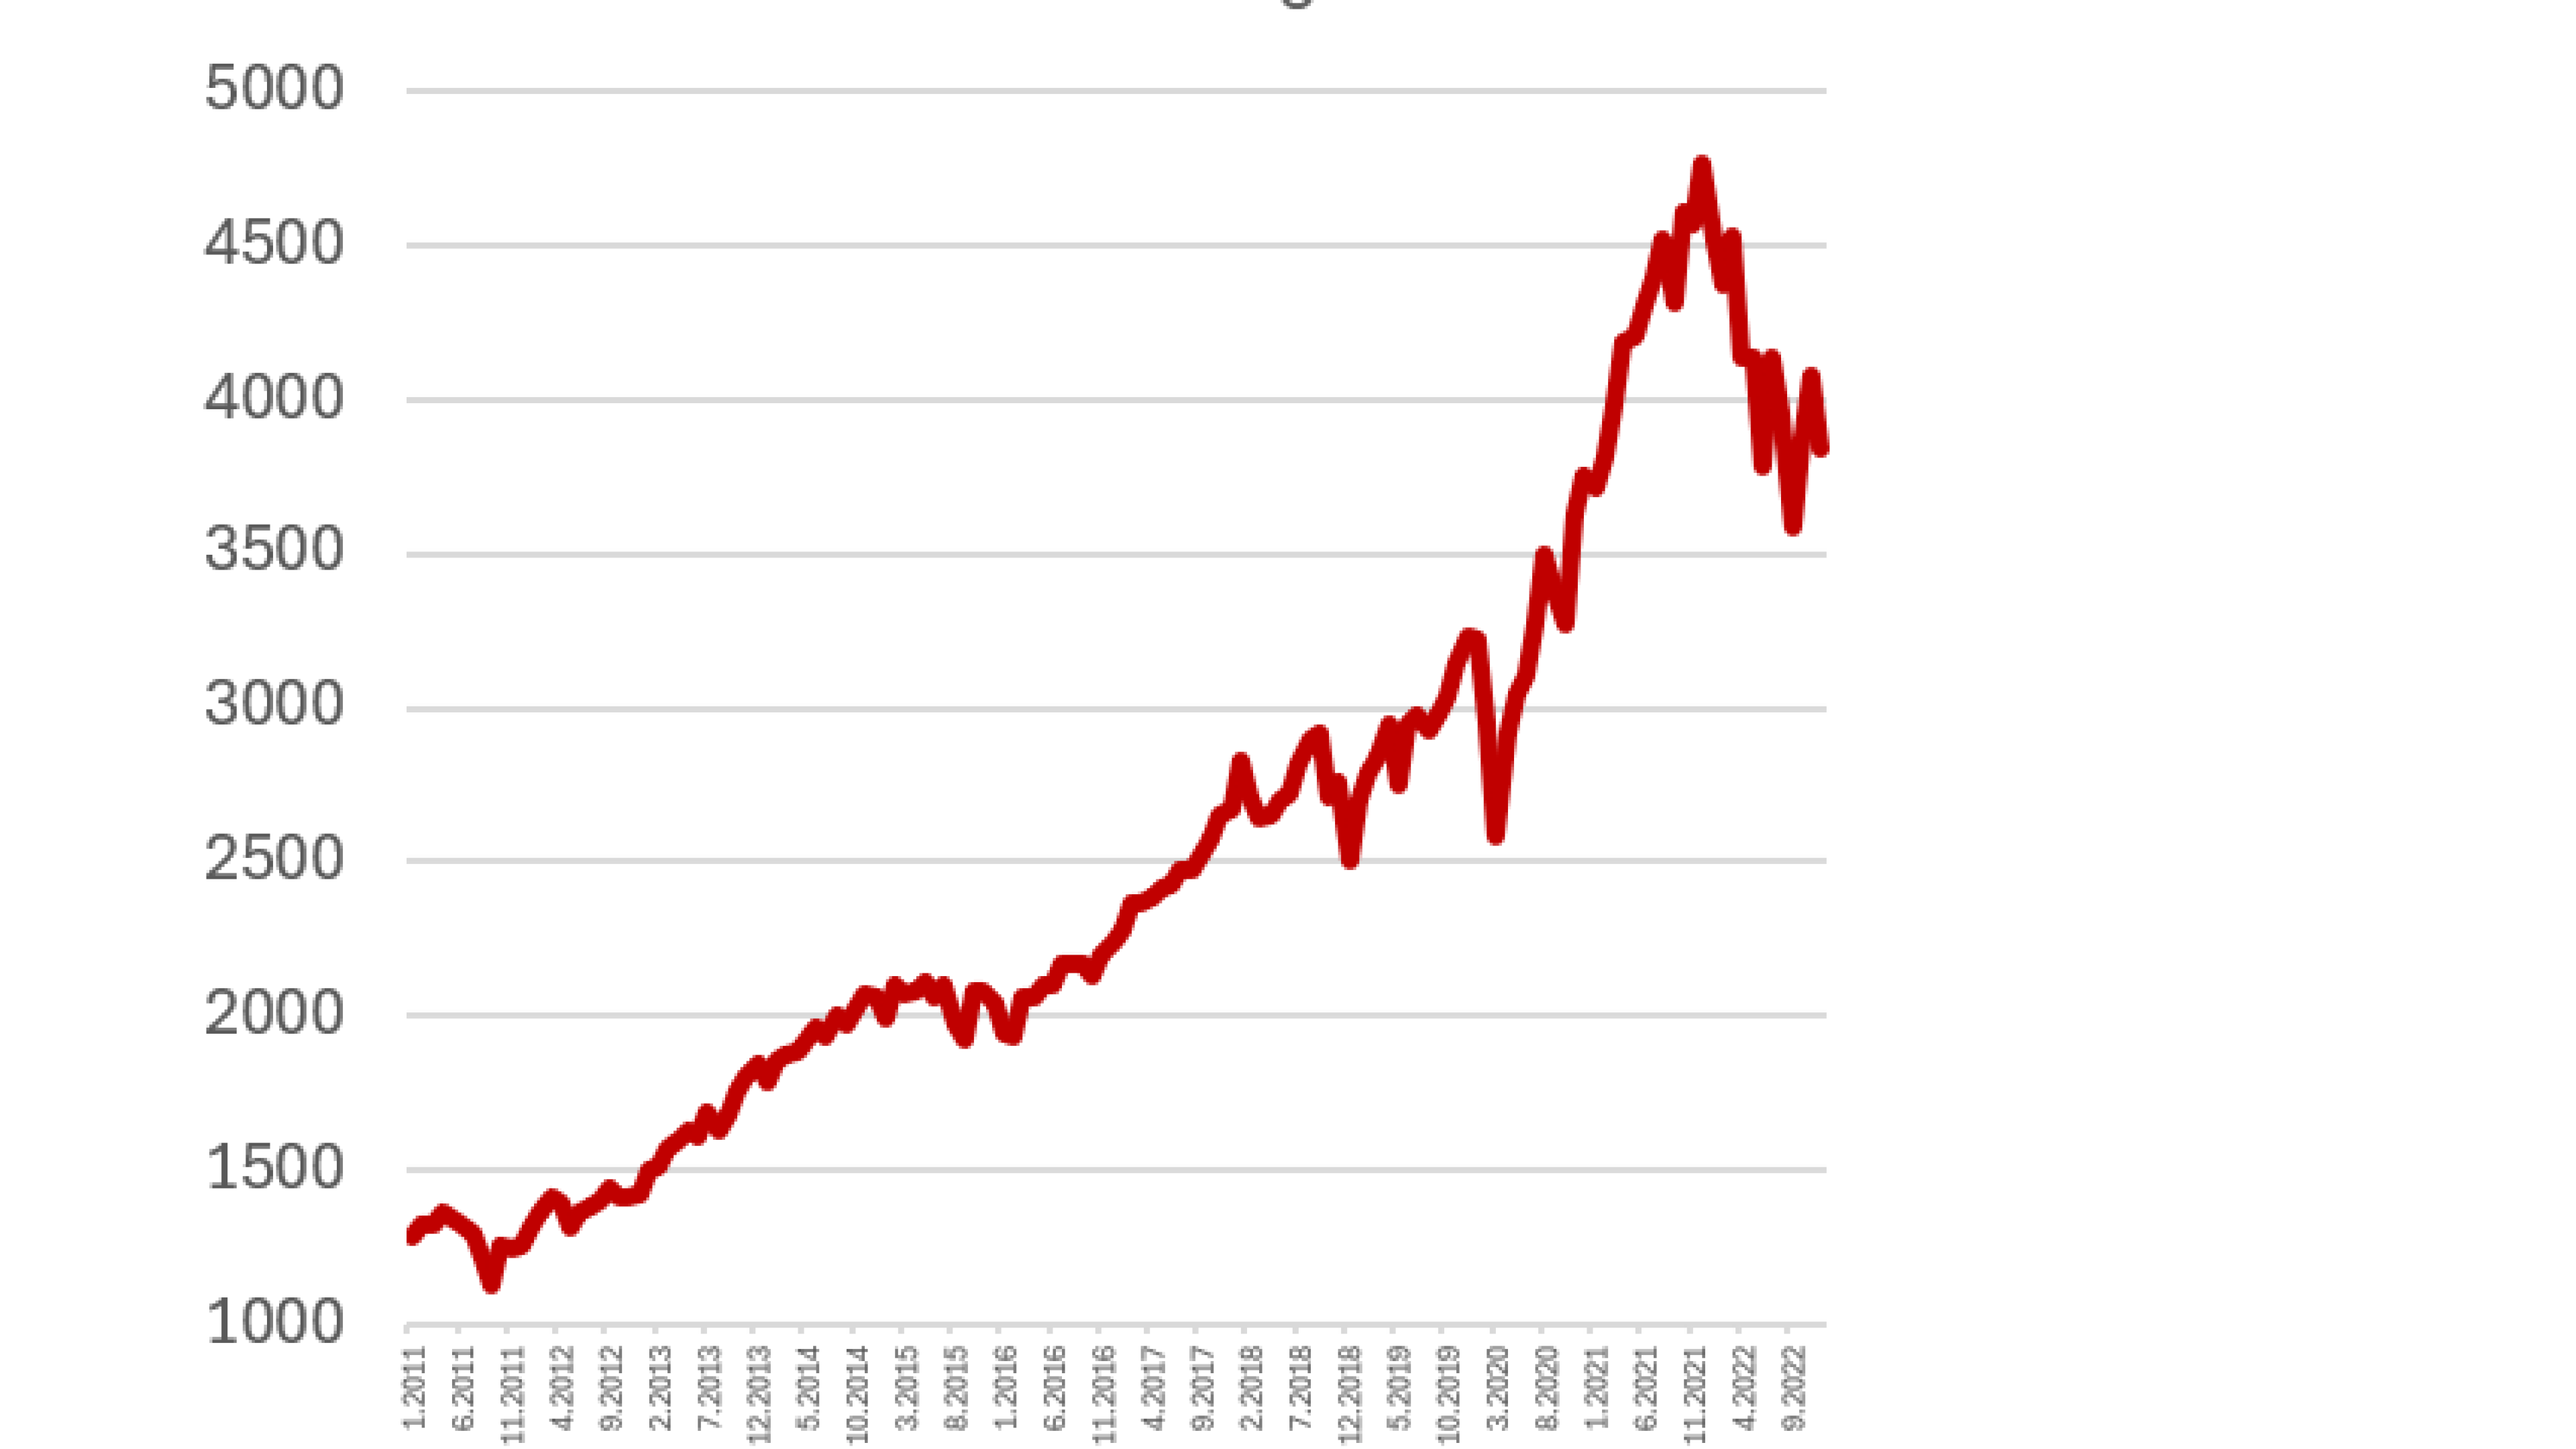 Graf ukazuje že aj taký výrazný pokles nezníži hodnotu investície, ktorá začala pred mnohými rokmi do mínusových hodnôt.